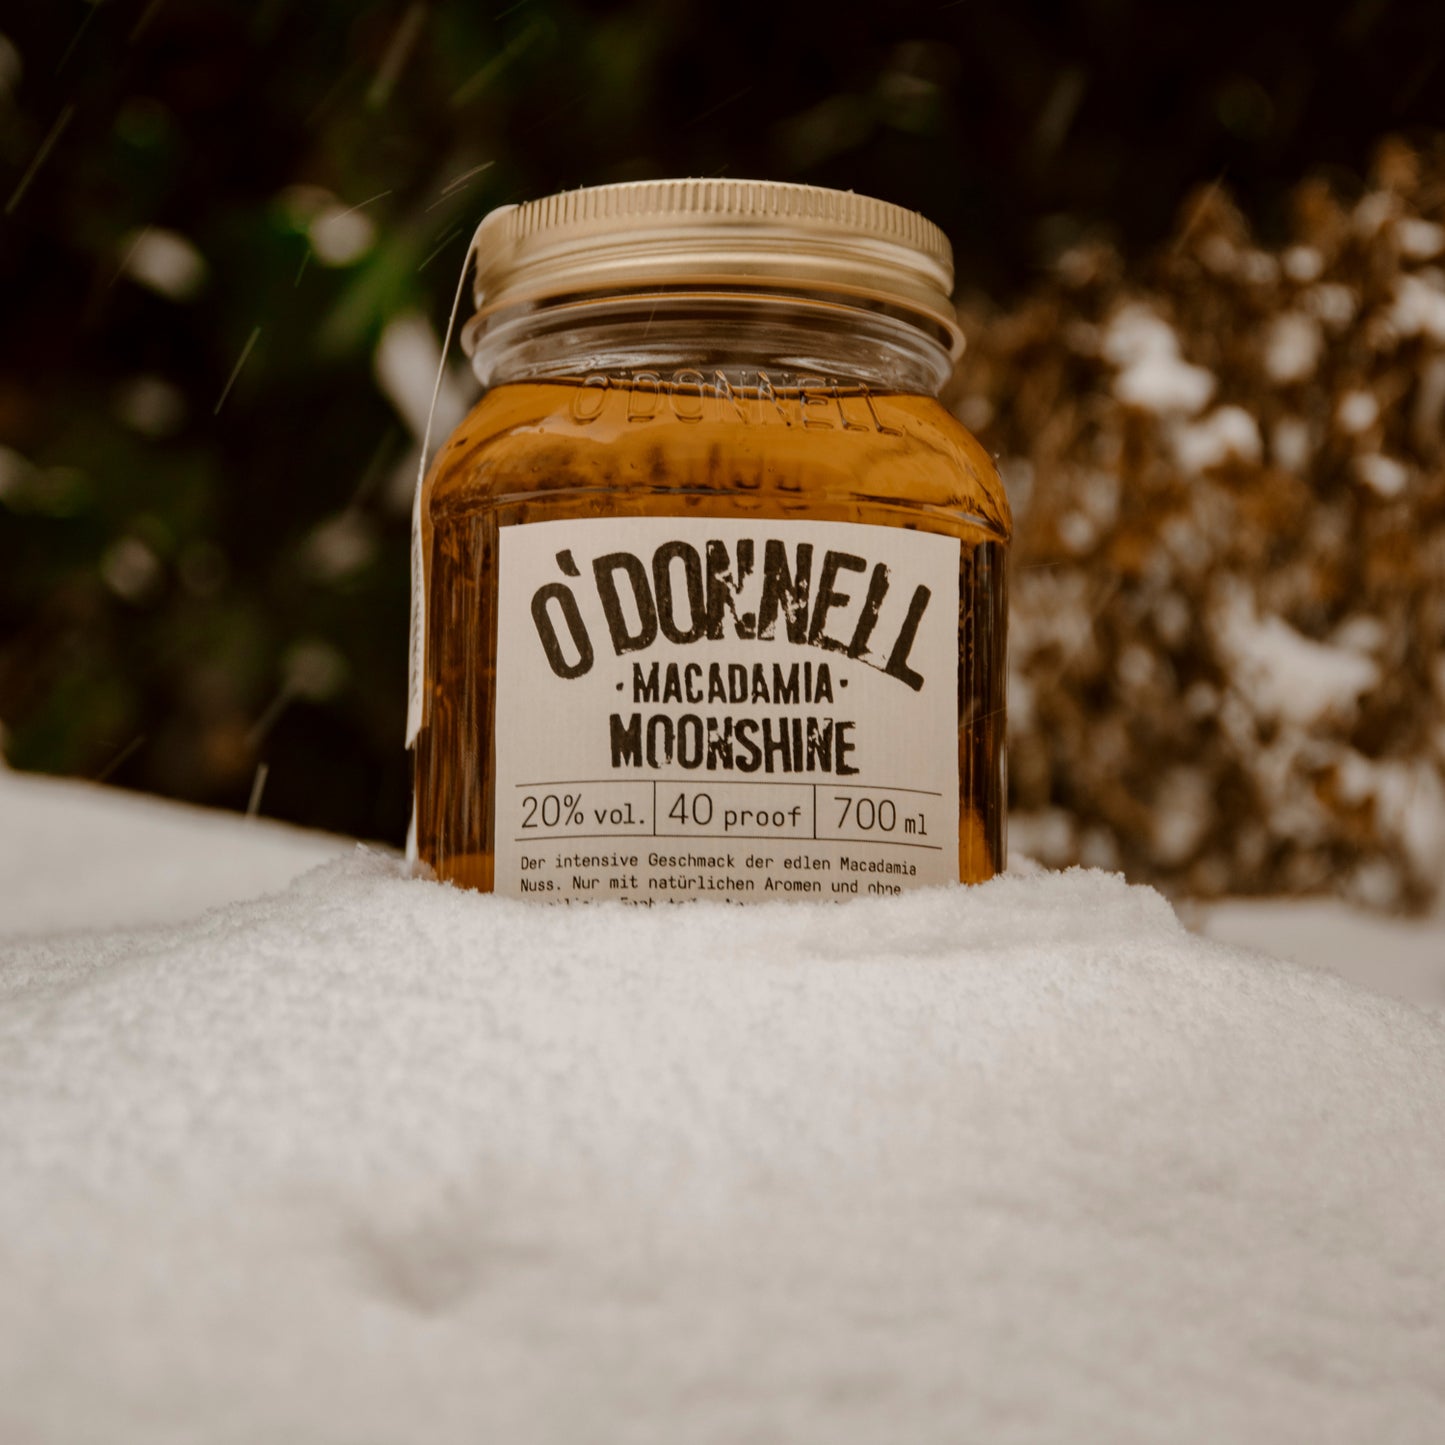 O'Donnell Moonshine macadamia mood image with snow